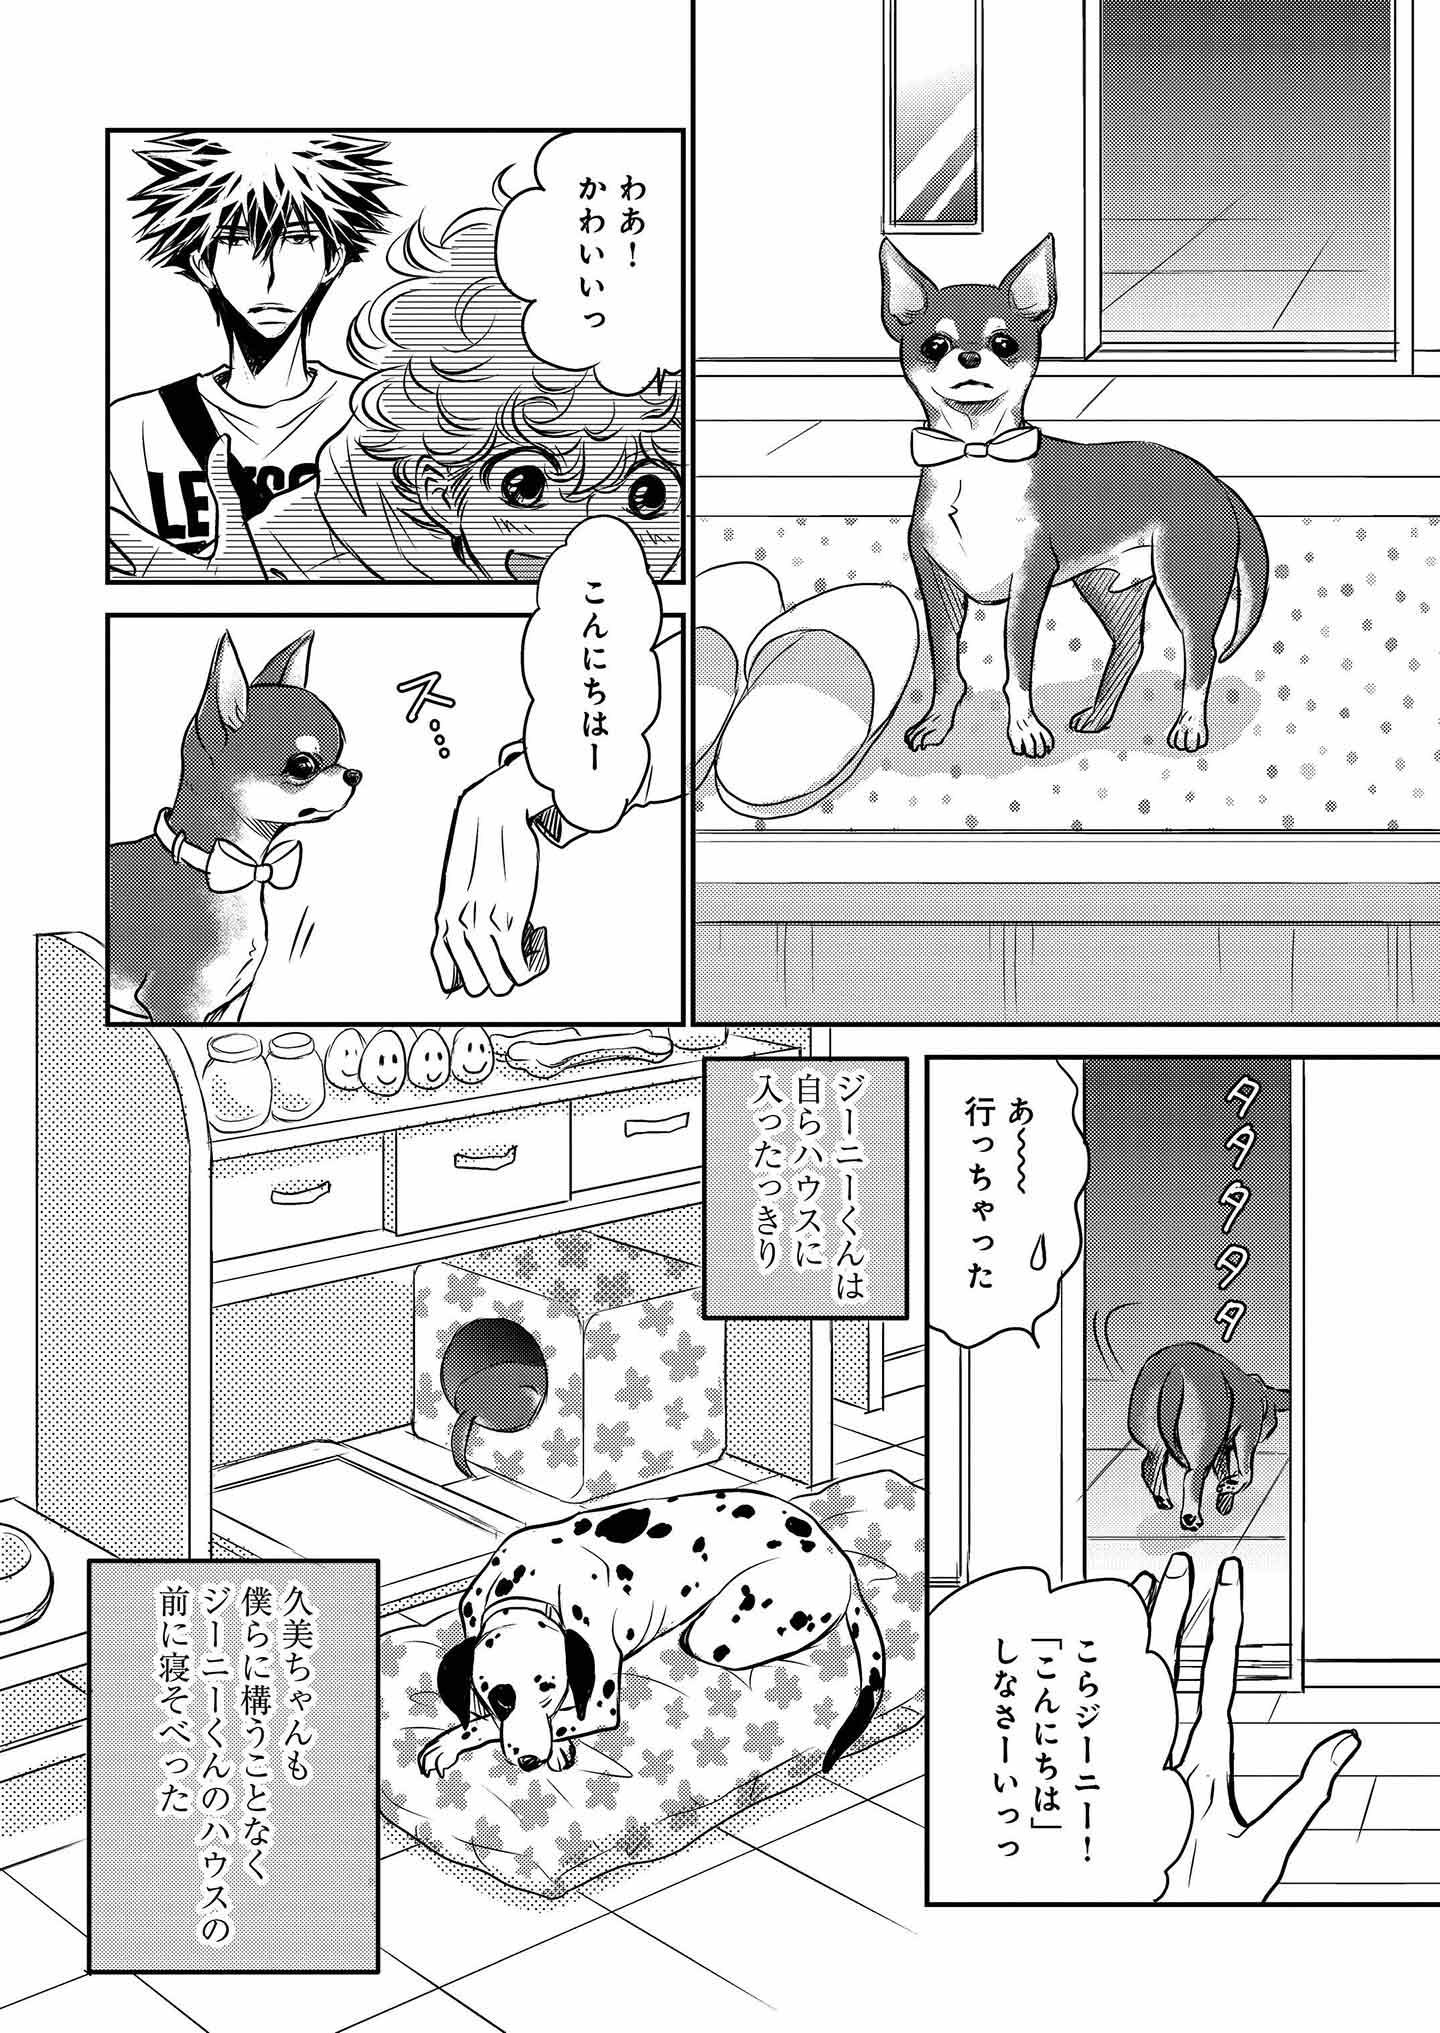 『DOG SIGNAL』11話目②　3ページ目